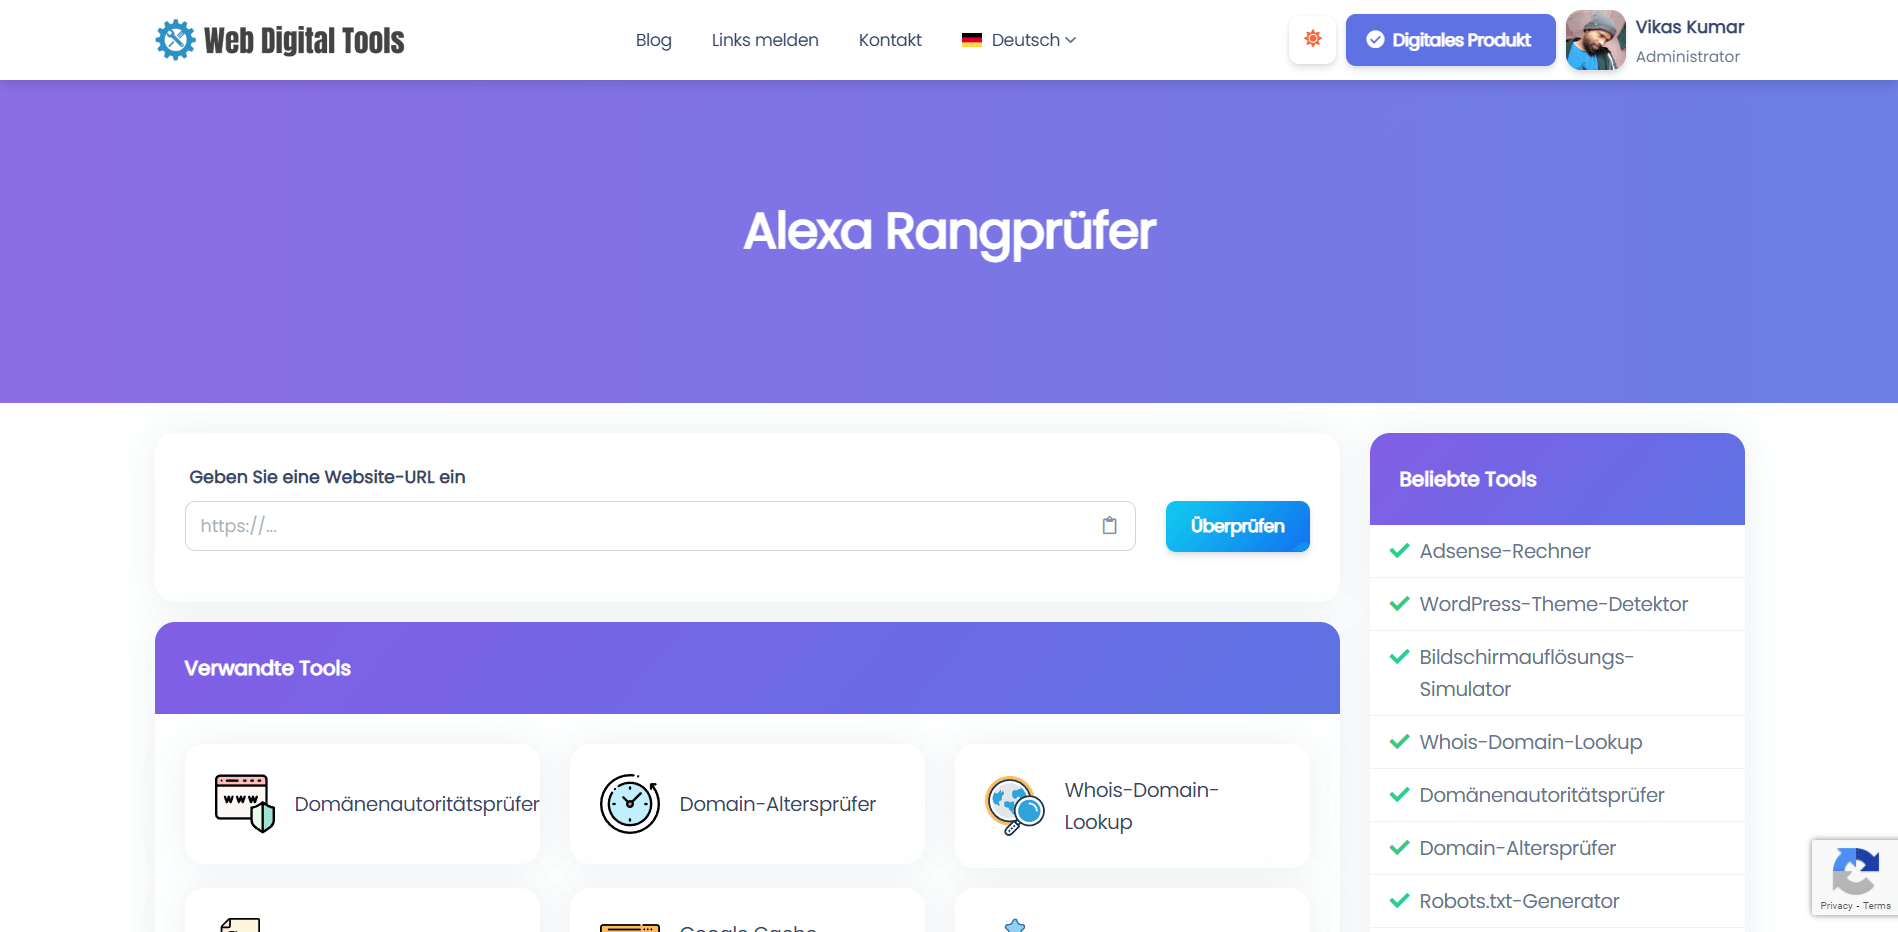 Alexa Rangprüfer